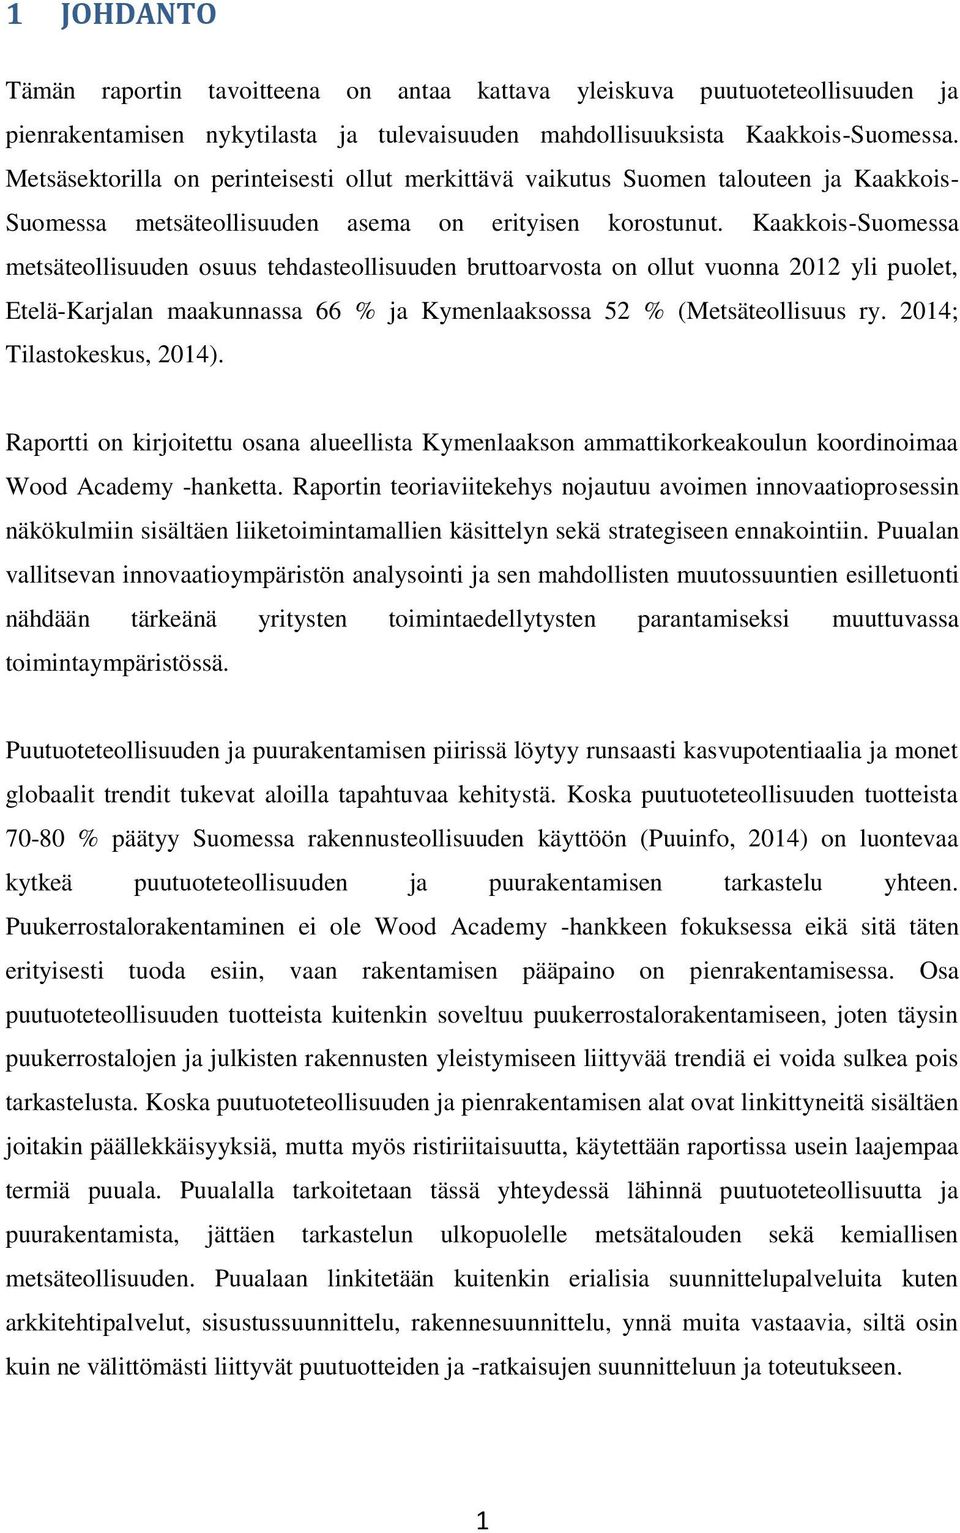 Kaakkois-Suomessa metsäteollisuuden osuus tehdasteollisuuden bruttoarvosta on ollut vuonna 2012 yli puolet, Etelä-Karjalan maakunnassa 66 % ja Kymenlaaksossa 52 % (Metsäteollisuus ry.